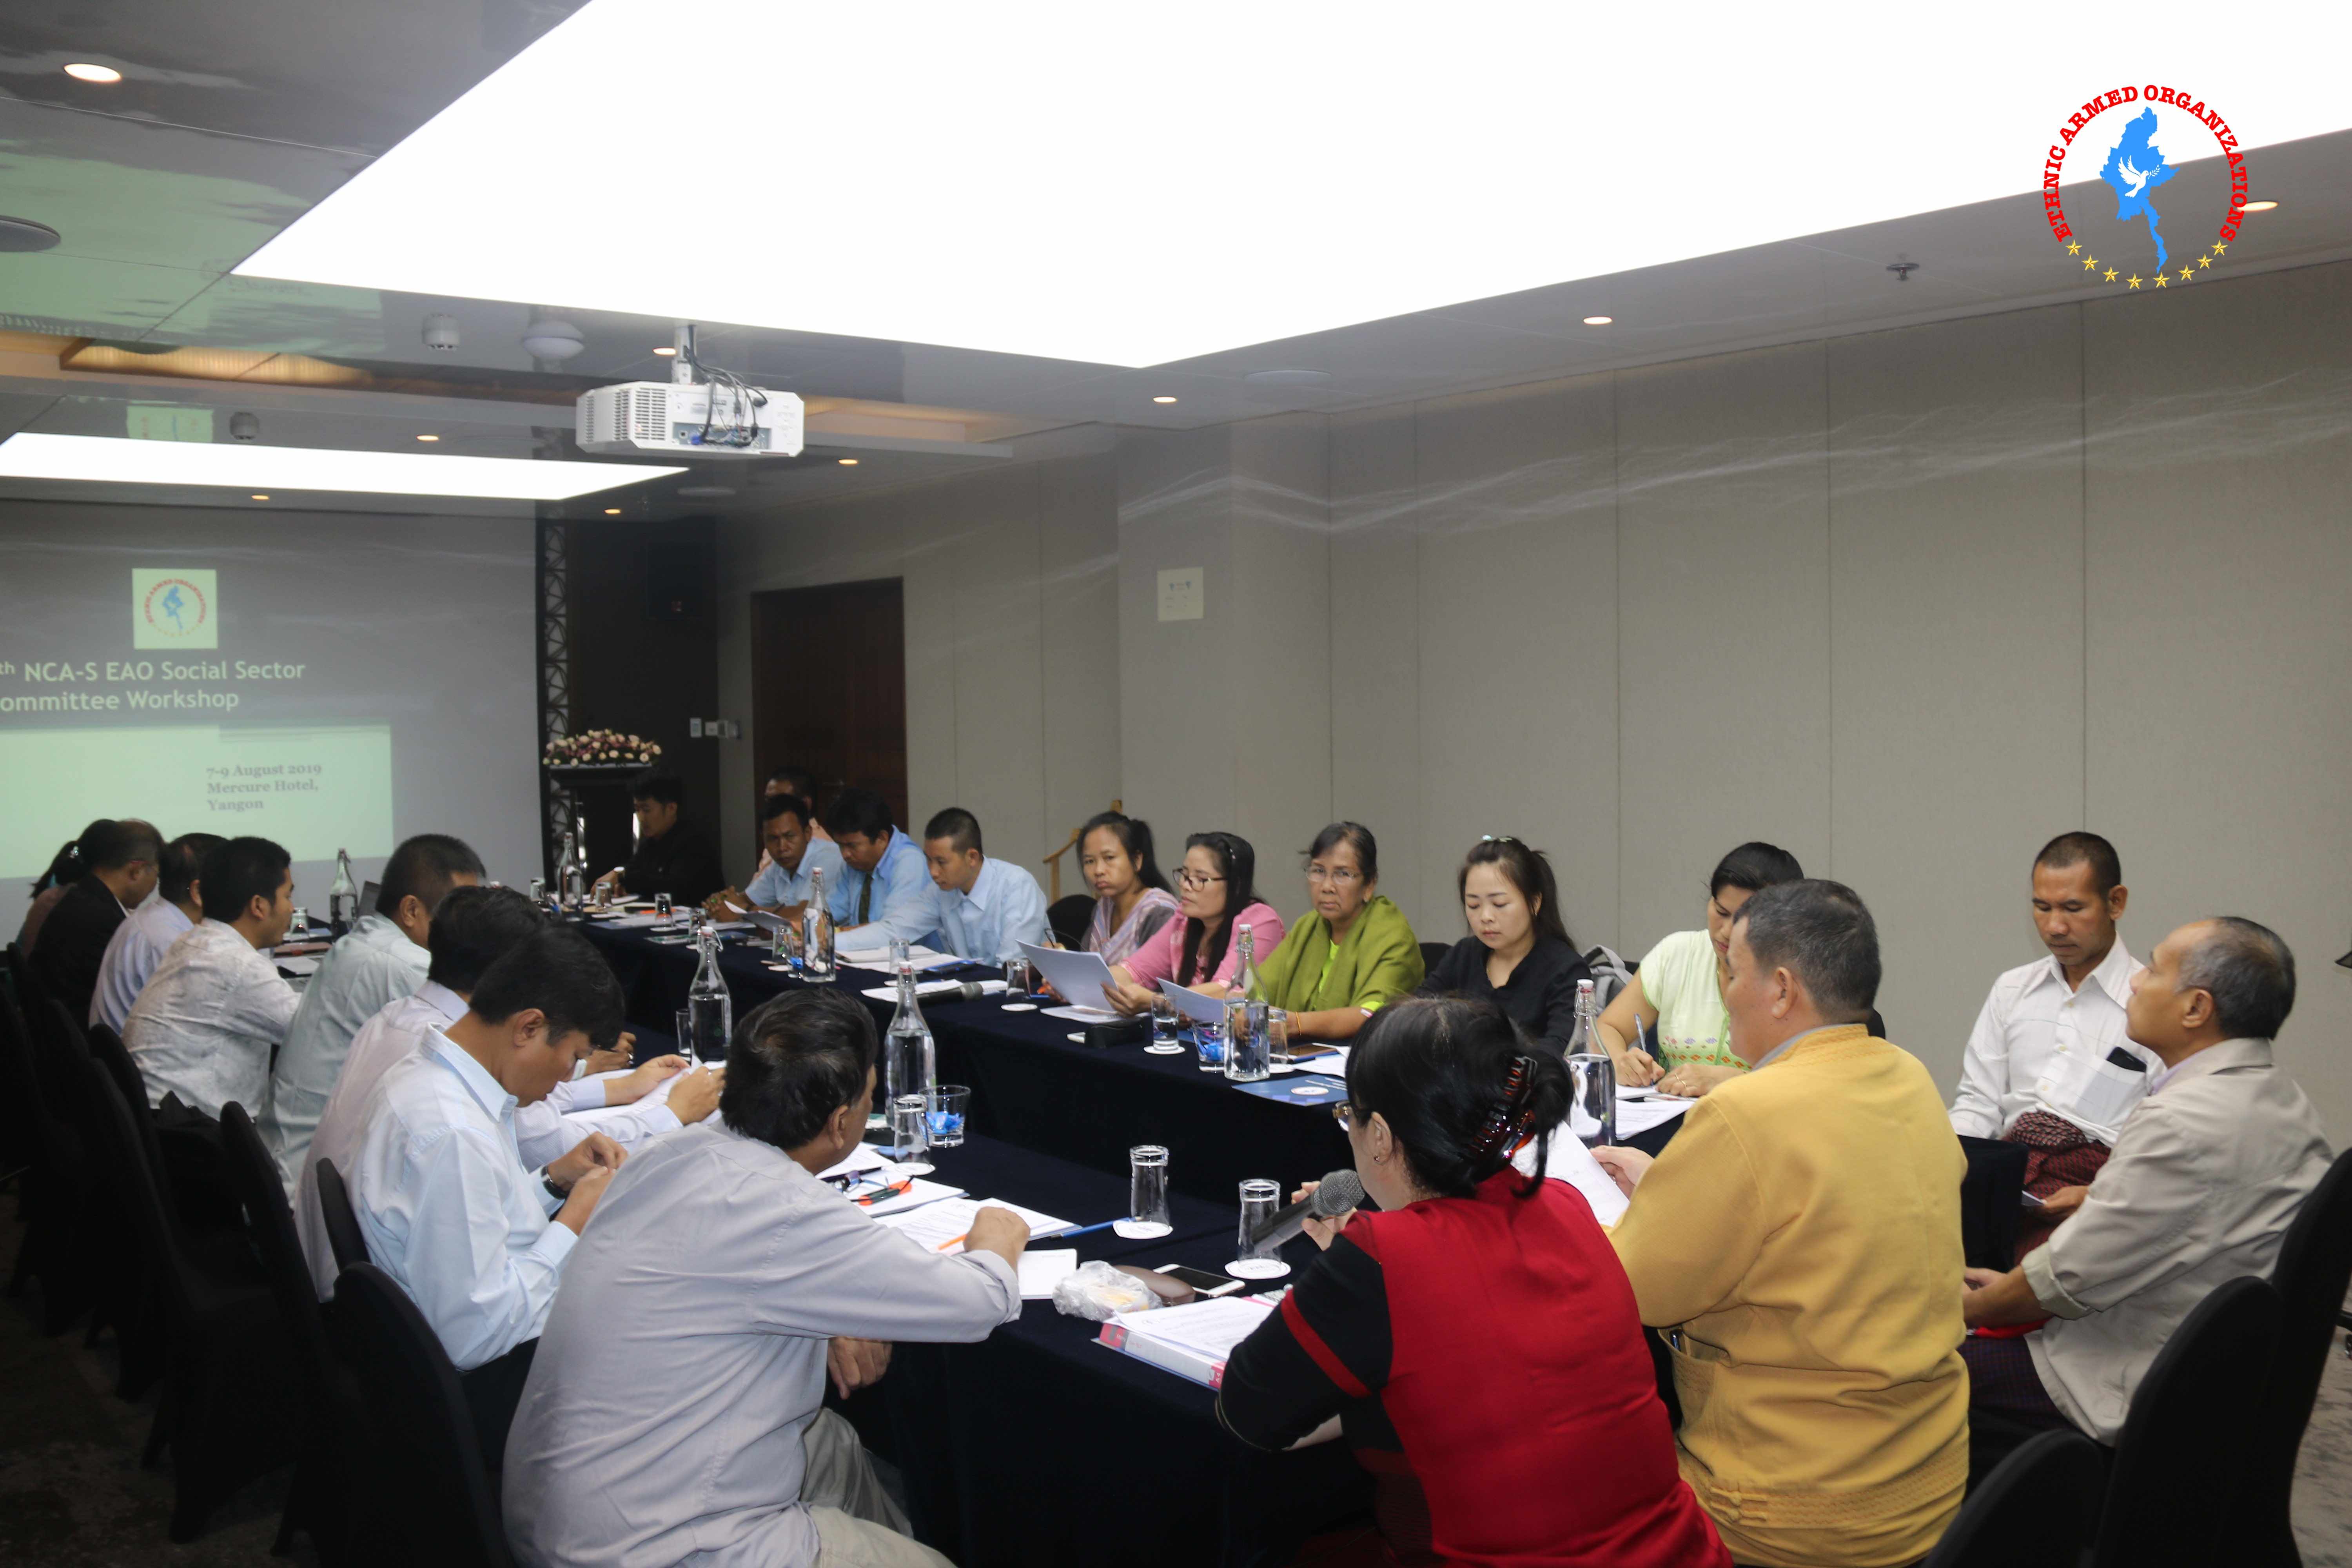 5th NCA-S EAO Social Sector Workshop held in Yangon